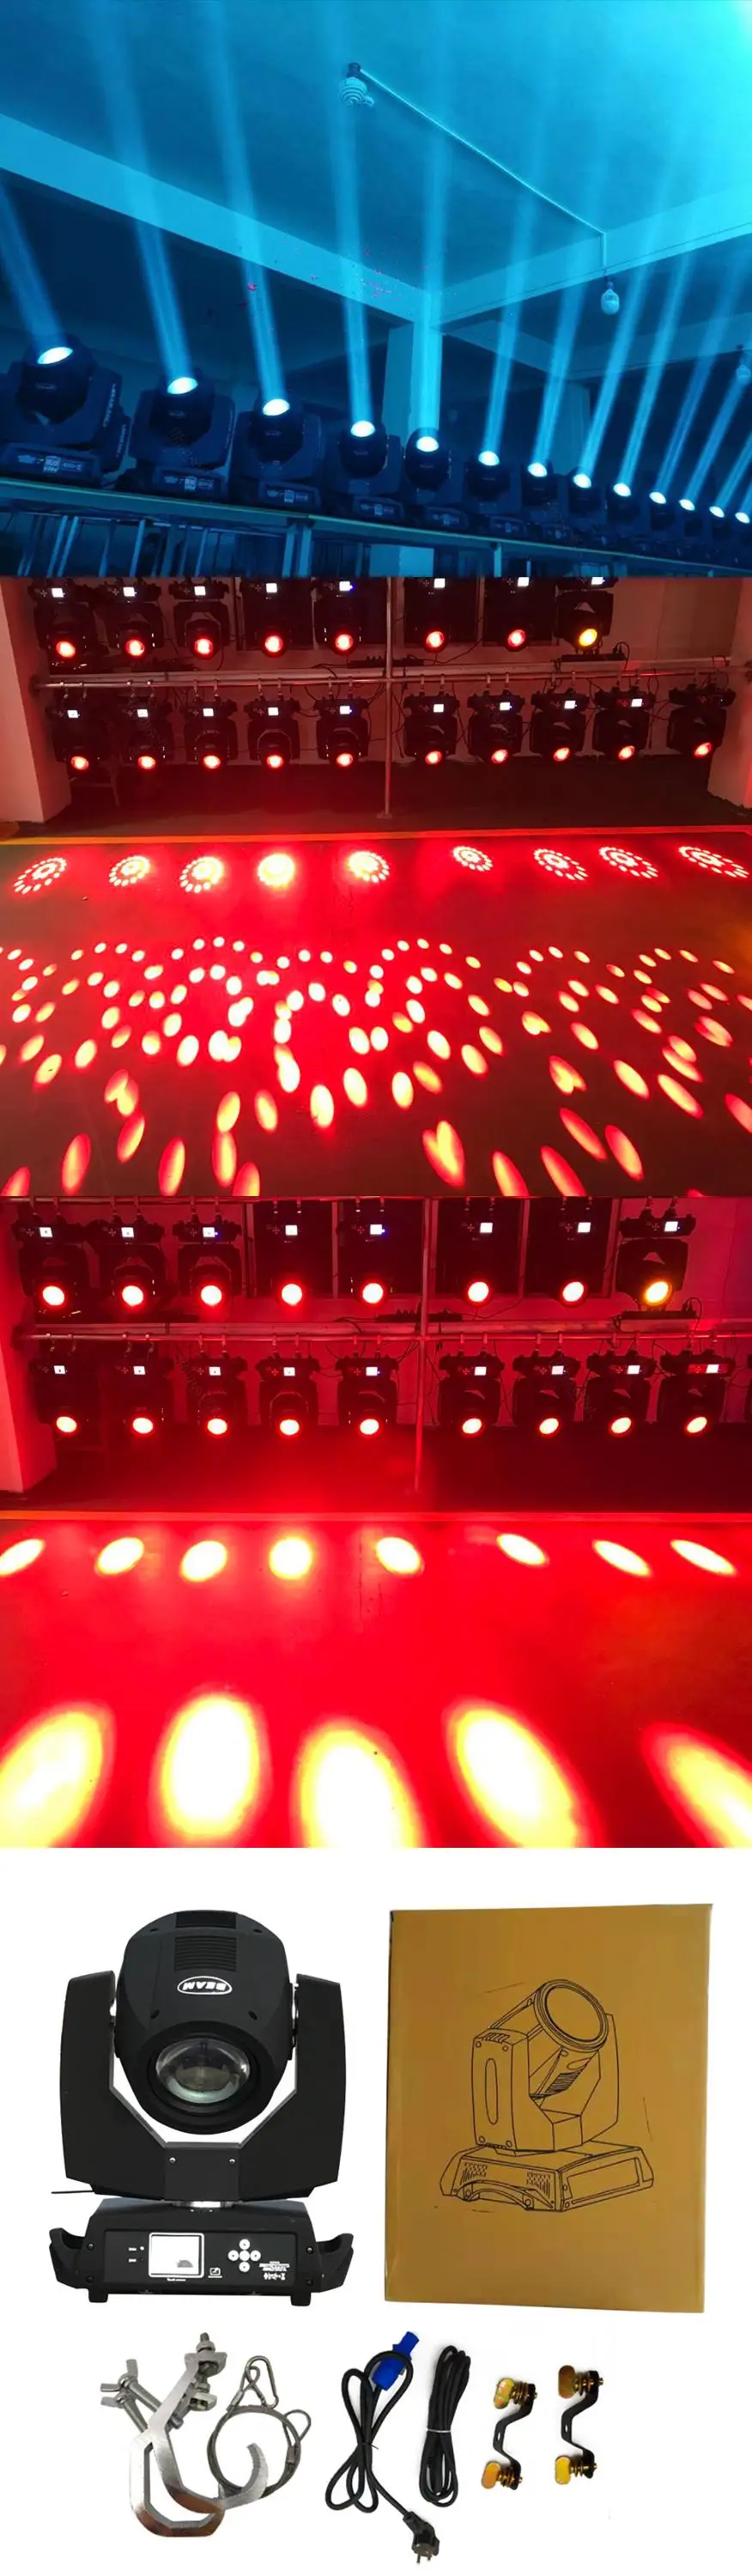 2 шт./лот световой луч для сцены 230 Вт движущаяся головка DMX 7r лампа 14 цветов гобо для дискотеки клуба DJ Рождество День Рождения Вечеринка эффект